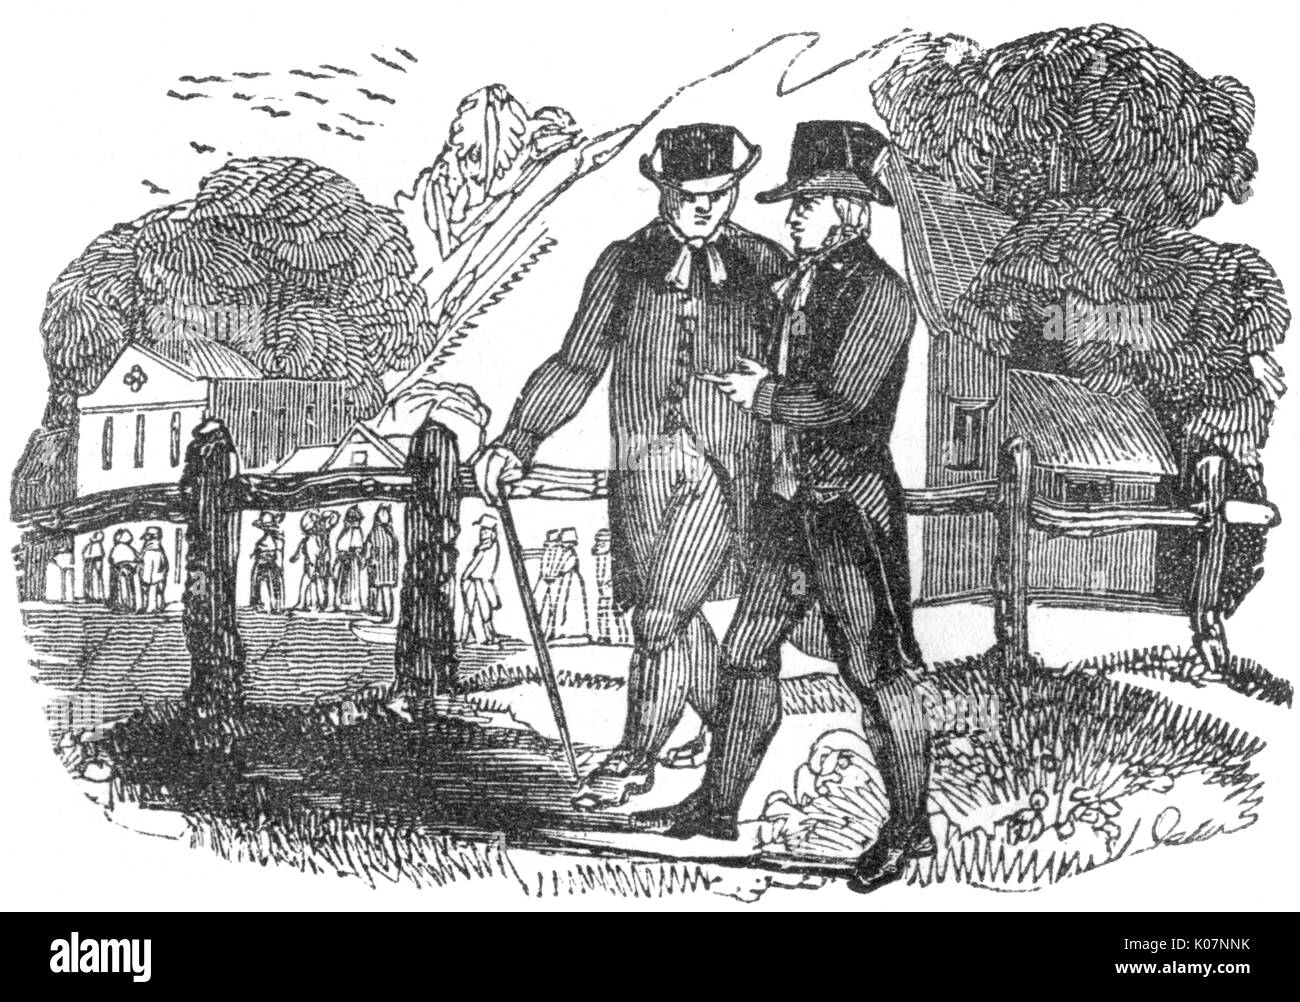 Two gentlemen talking, c. 1800 Stock Photo